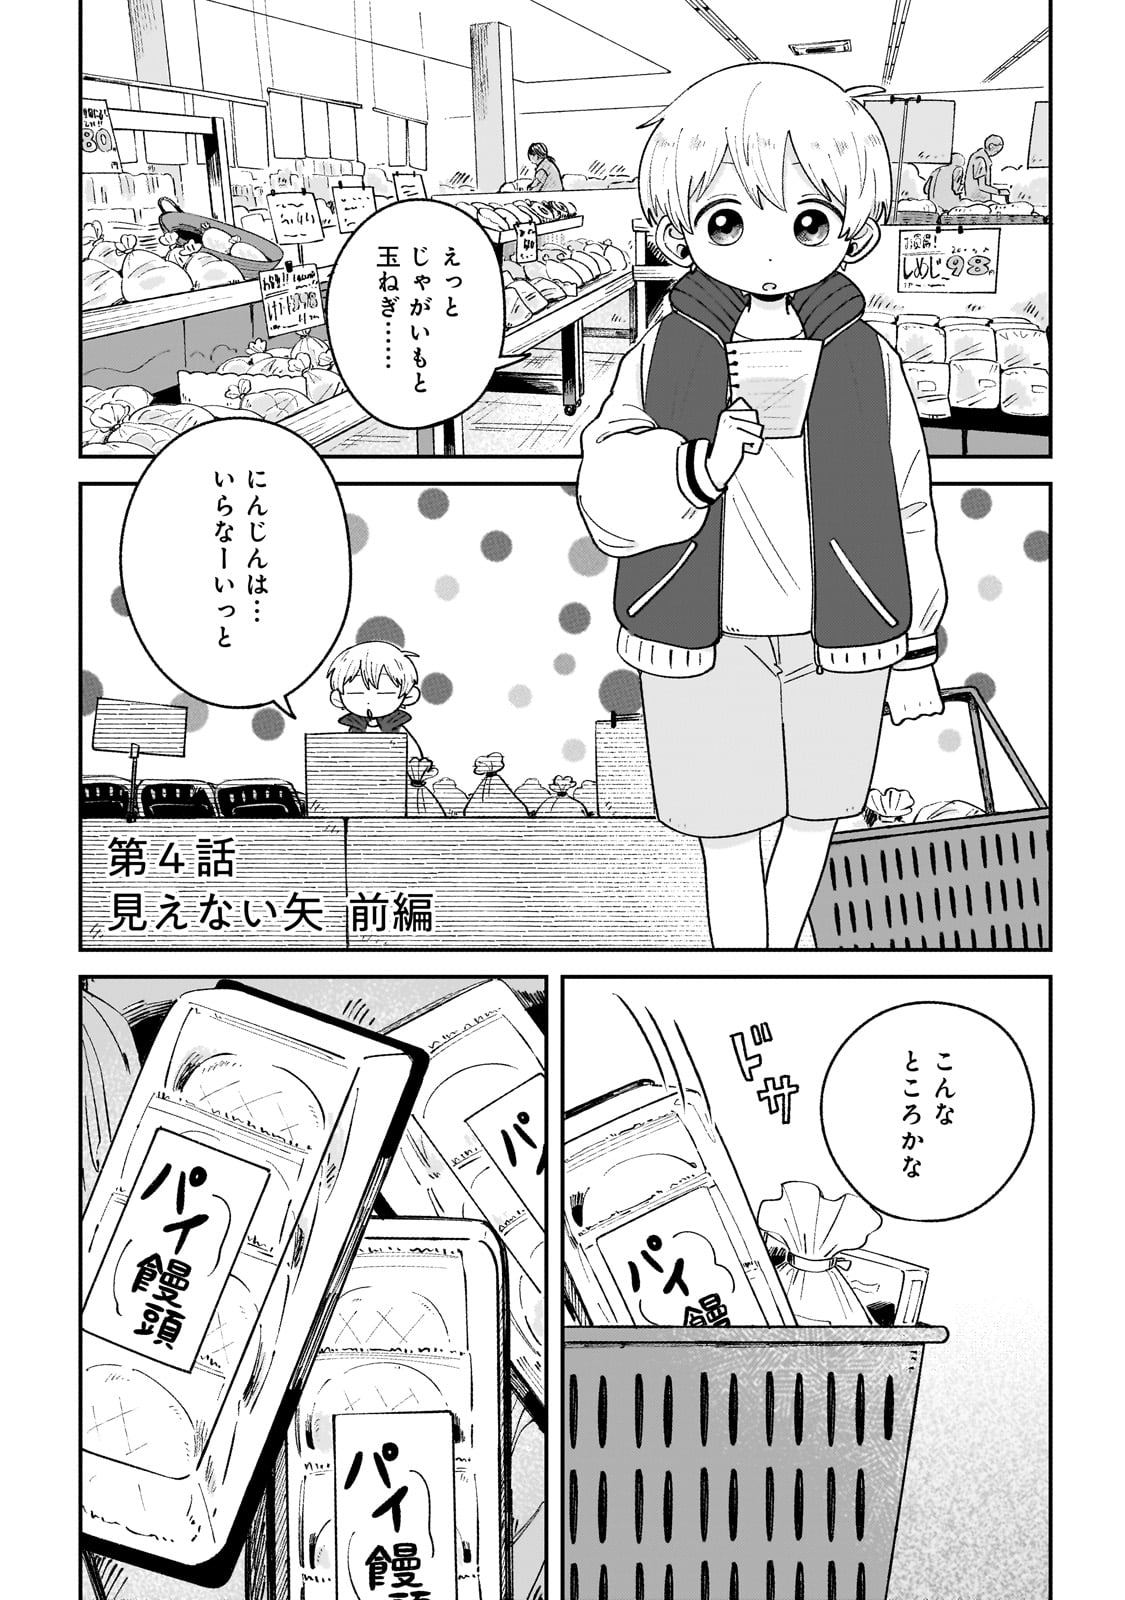 Boku to Ayakashi no 365 Nichi - Chapter 4 - Page 1